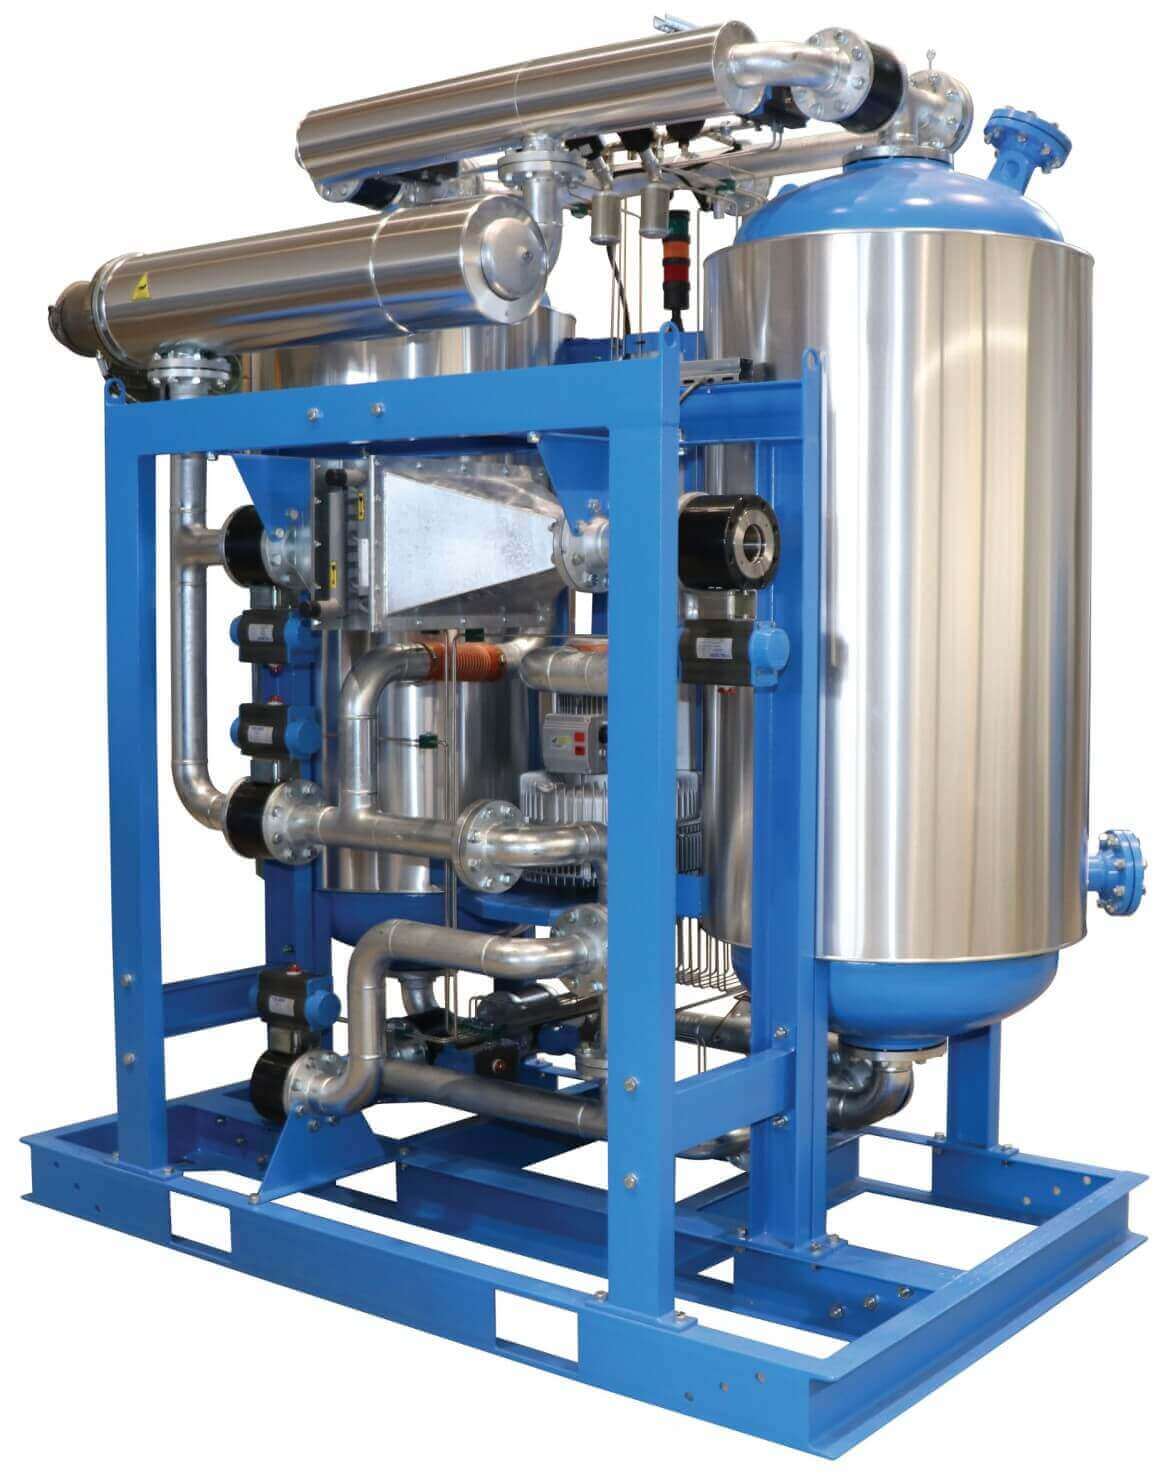 2-R-Dry-BVL-Adsorpcioni-susac-za-komprimovani-vazduh-regeneracija-vakuumom-u-zatvorenom-krugu-tehnogama